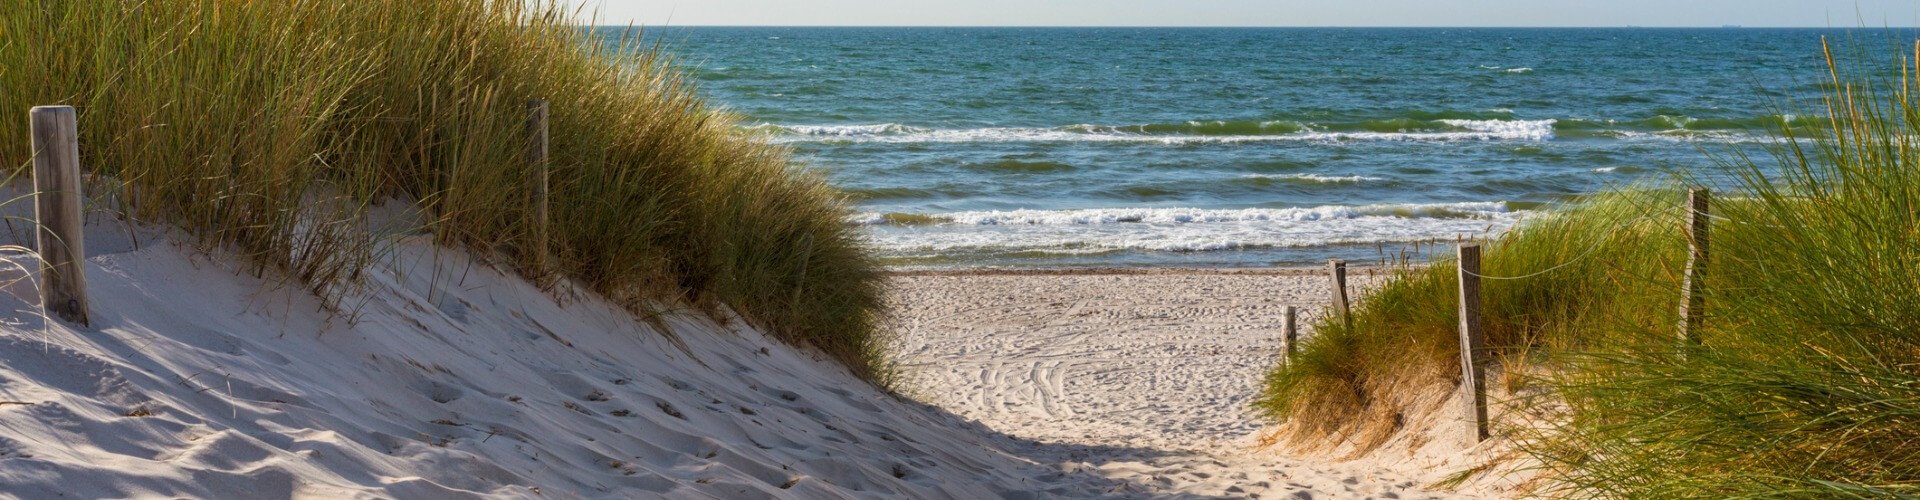 10 gute Gründe für die Ostsee